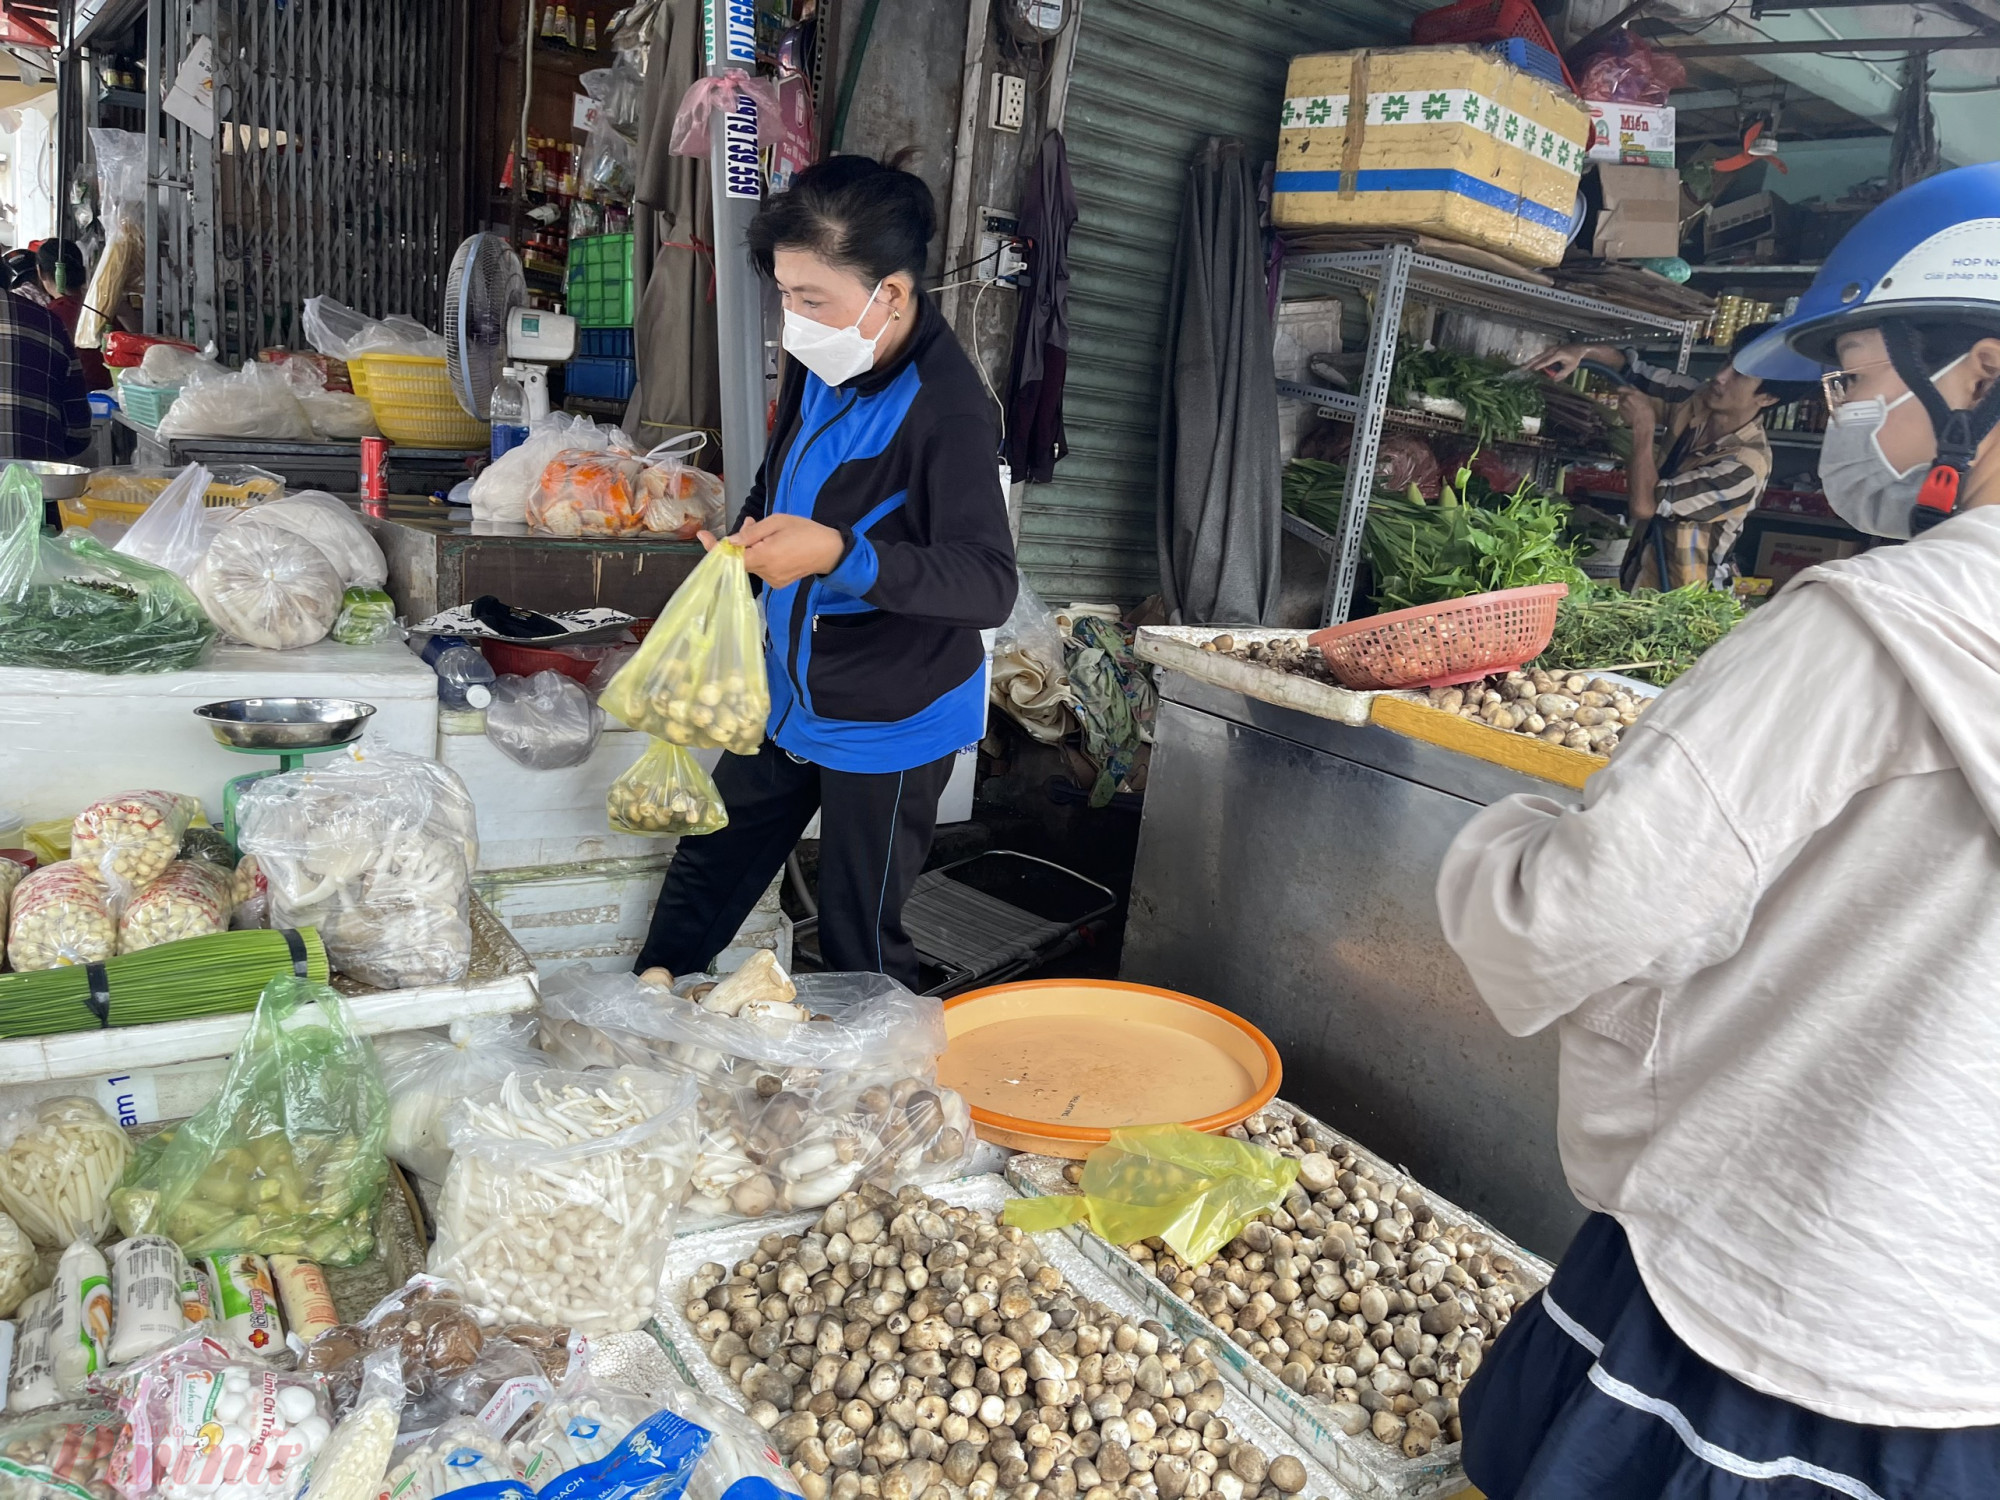 Nhiều mặt hàng nấm bán tại chợ lẻ dạng hàng xá, không rõ nguồn gốc xuất xứ hàng hóa. (Ảnh: Nguyễn Câm)